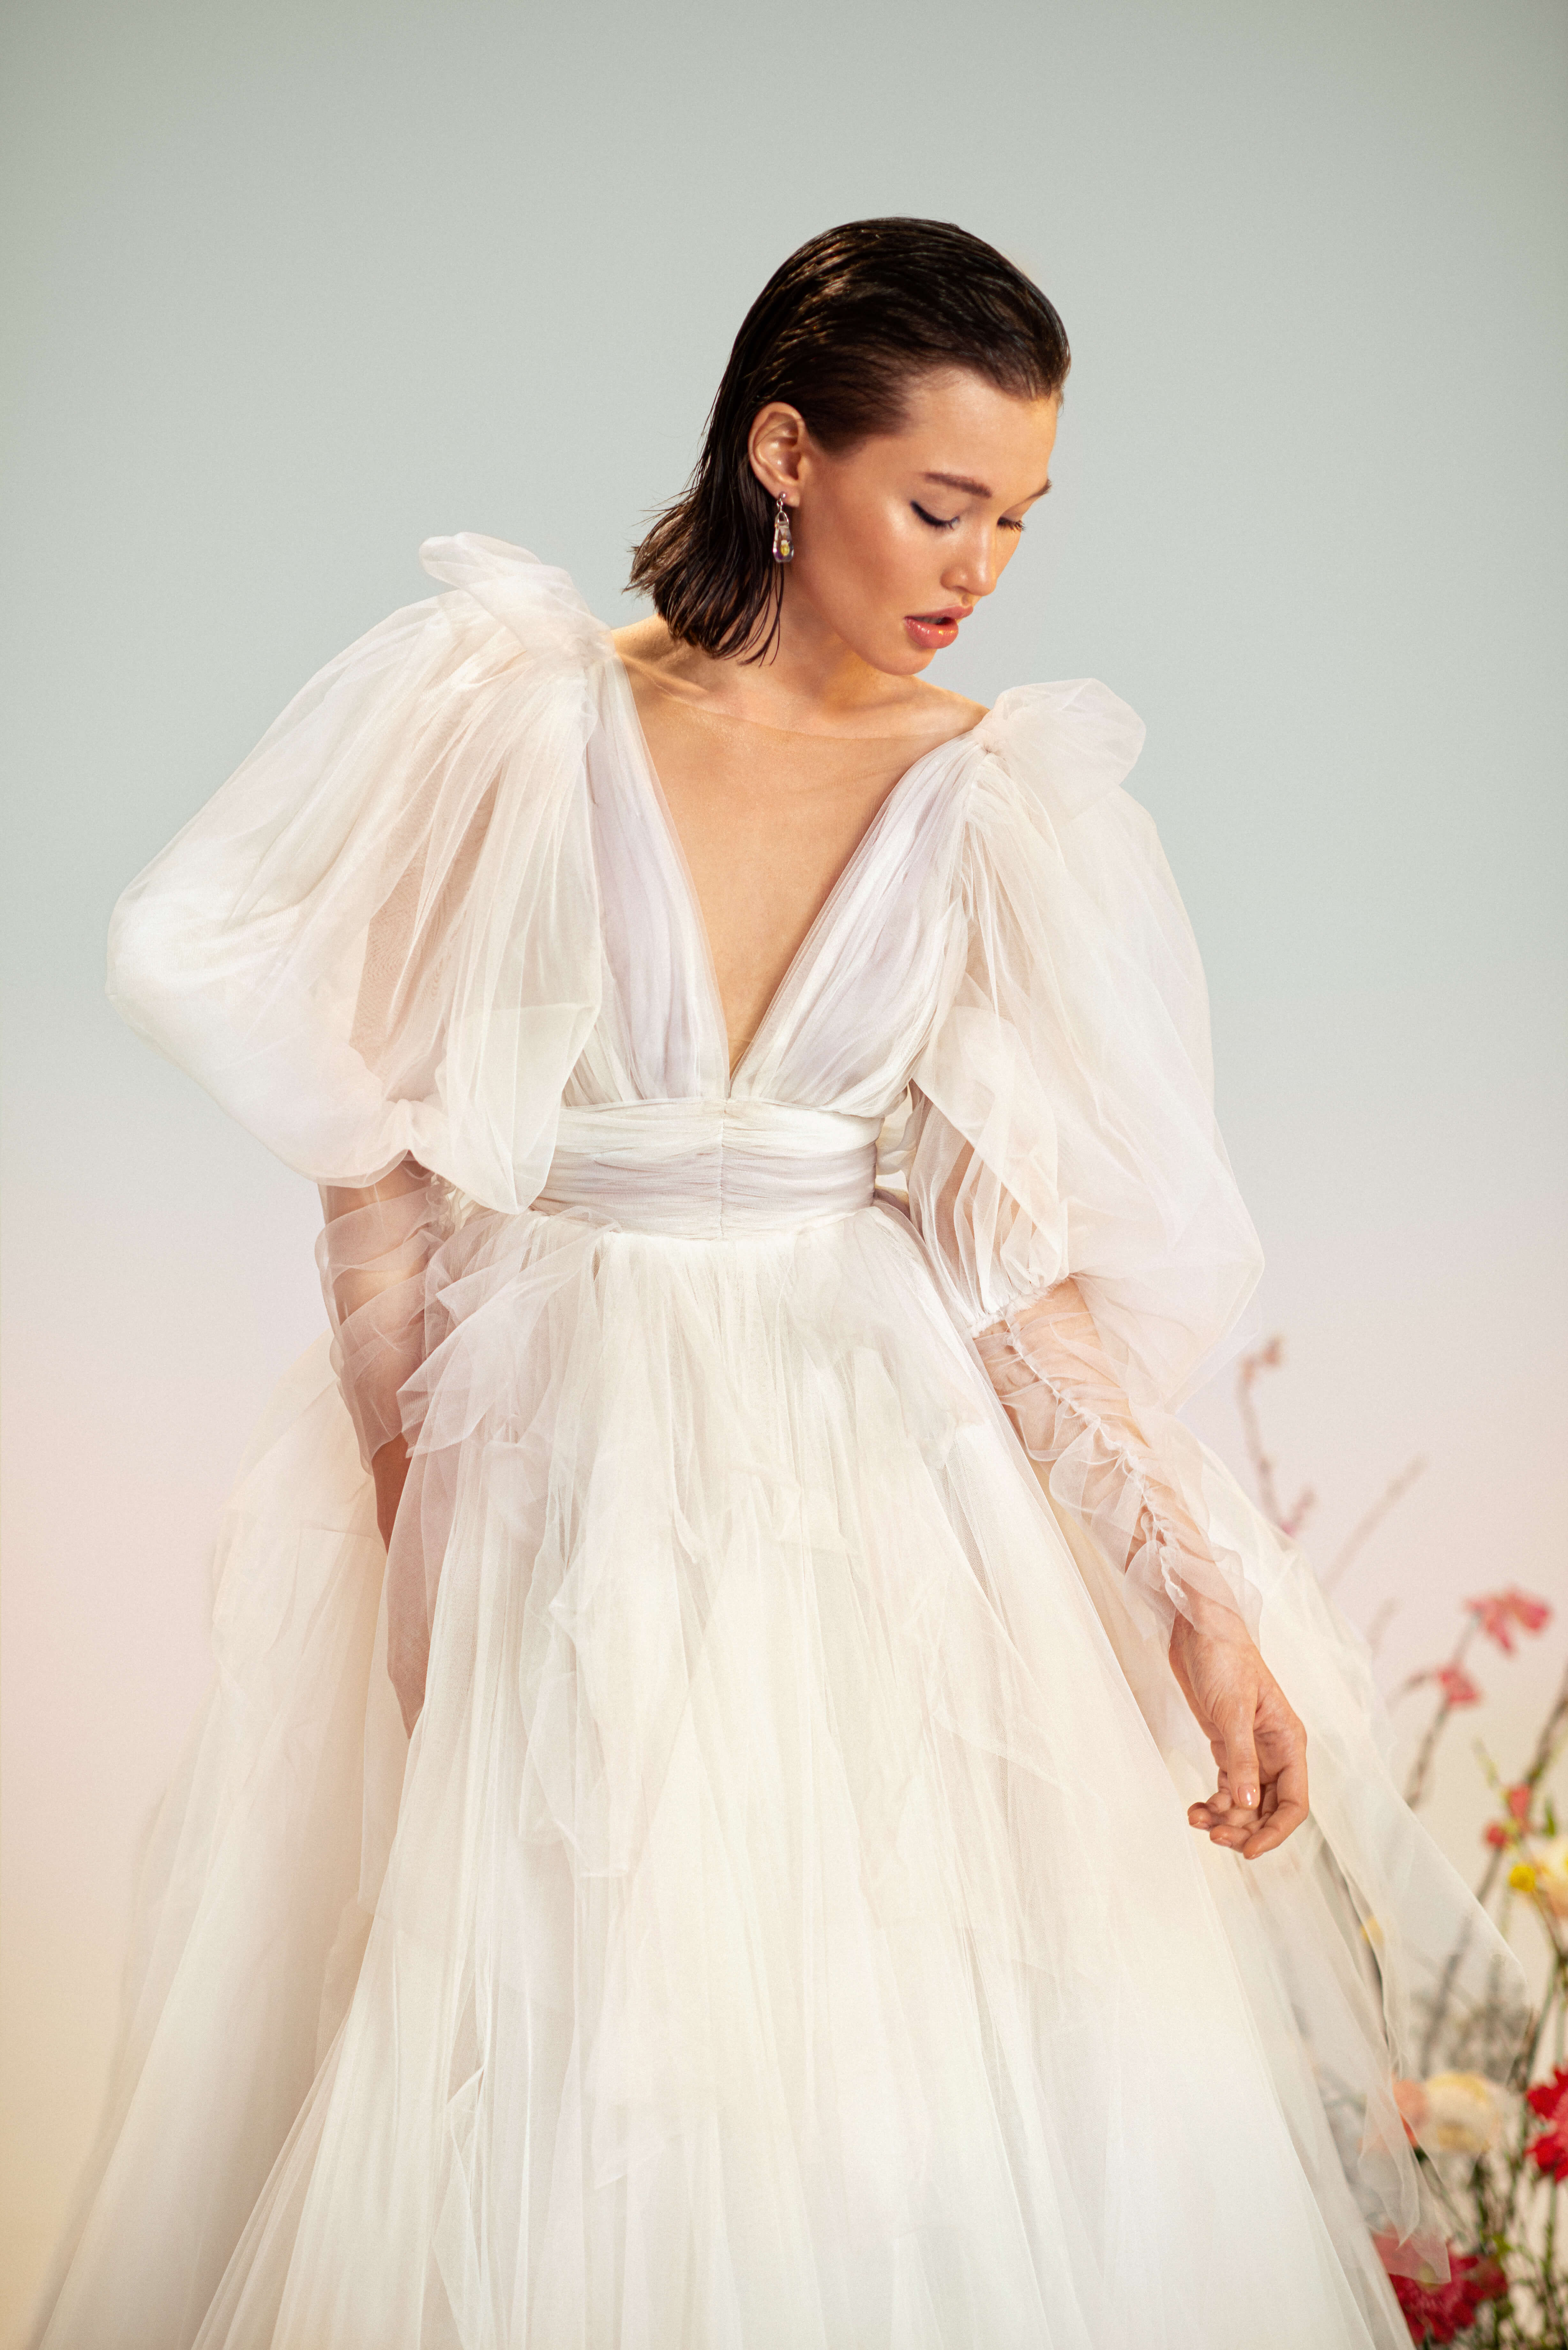 Купить свадебное платье «Мио» Рара Авис из коллекции Оазис 2022 года в салоне «Мэри Трюфель»